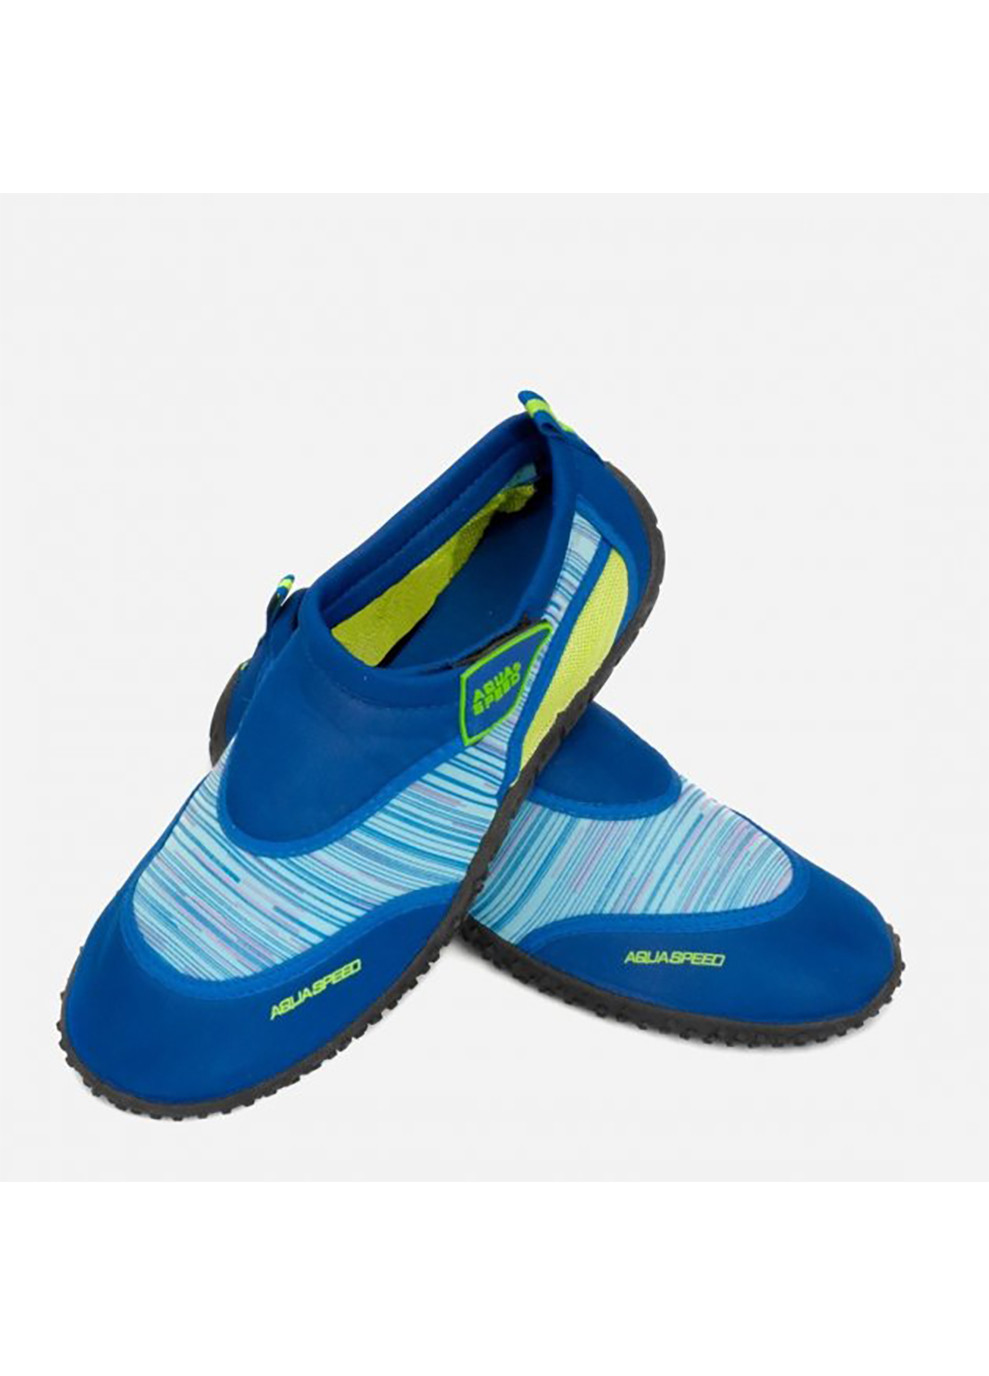 Синие спортивные аквашузы aqua shoe model 2c 6578 синий, голубой, жёлтый Aqua Speed